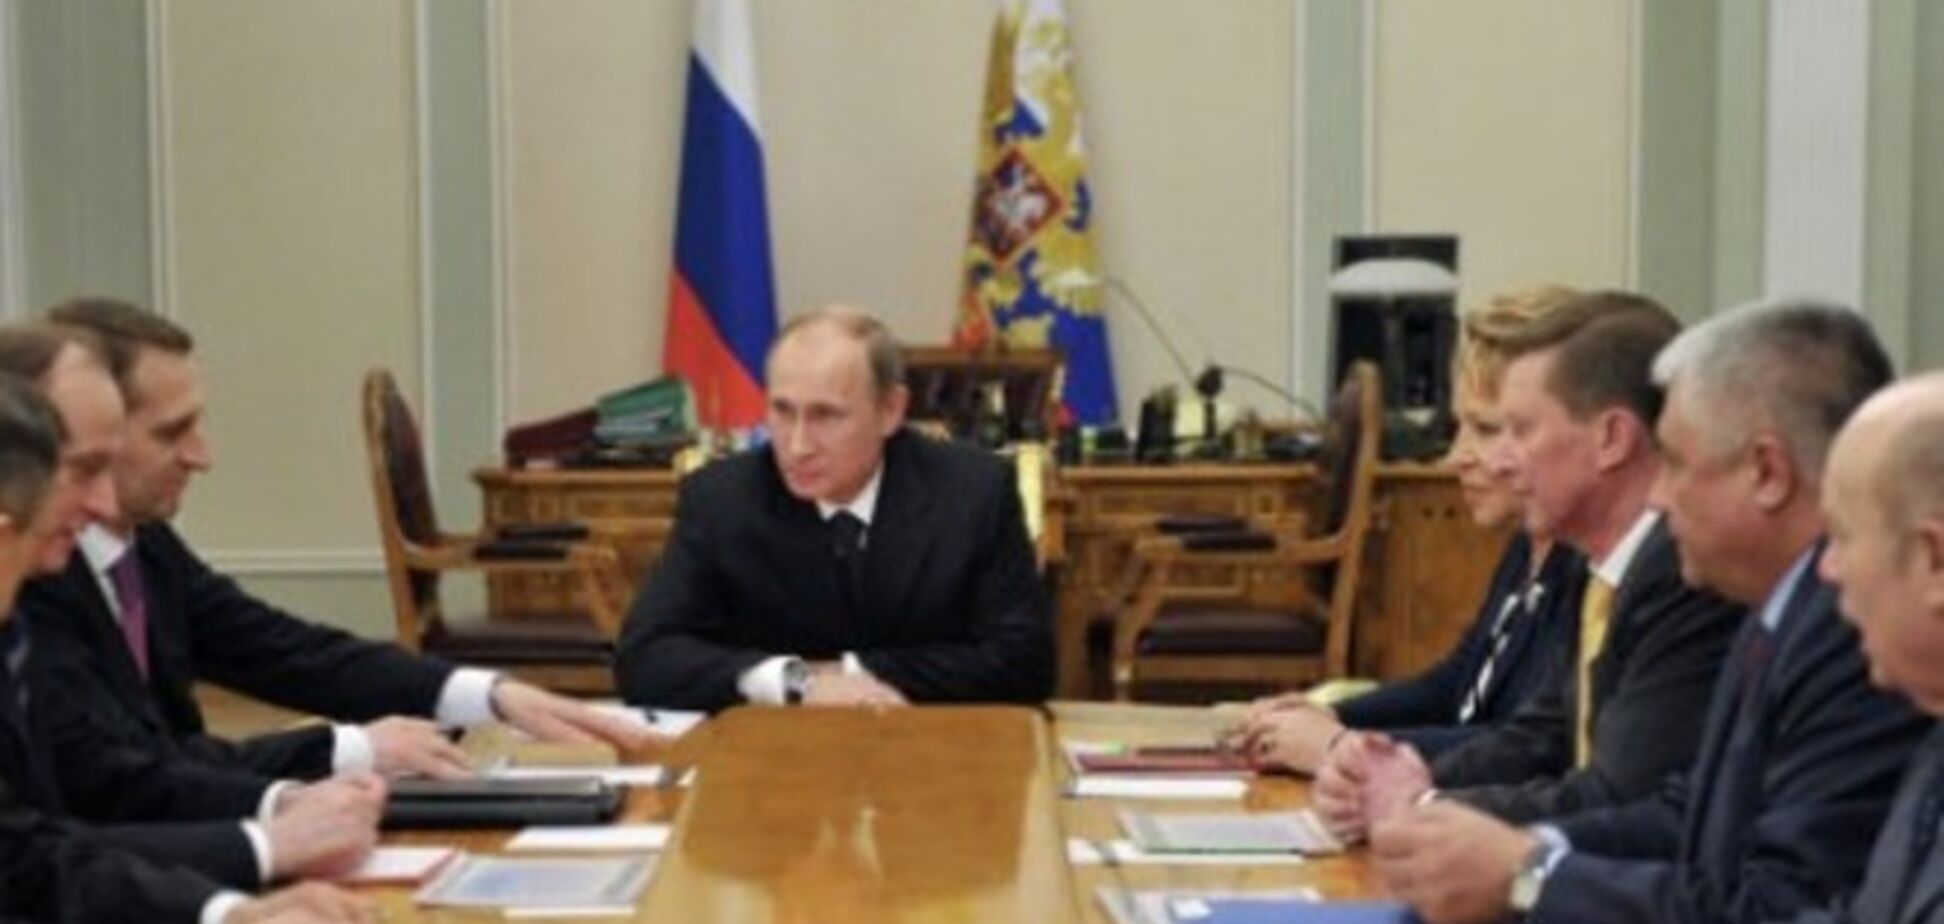 Путін пообіцяв 'адекватно реагувати' на спроби послабити міжнародні позиції Росії